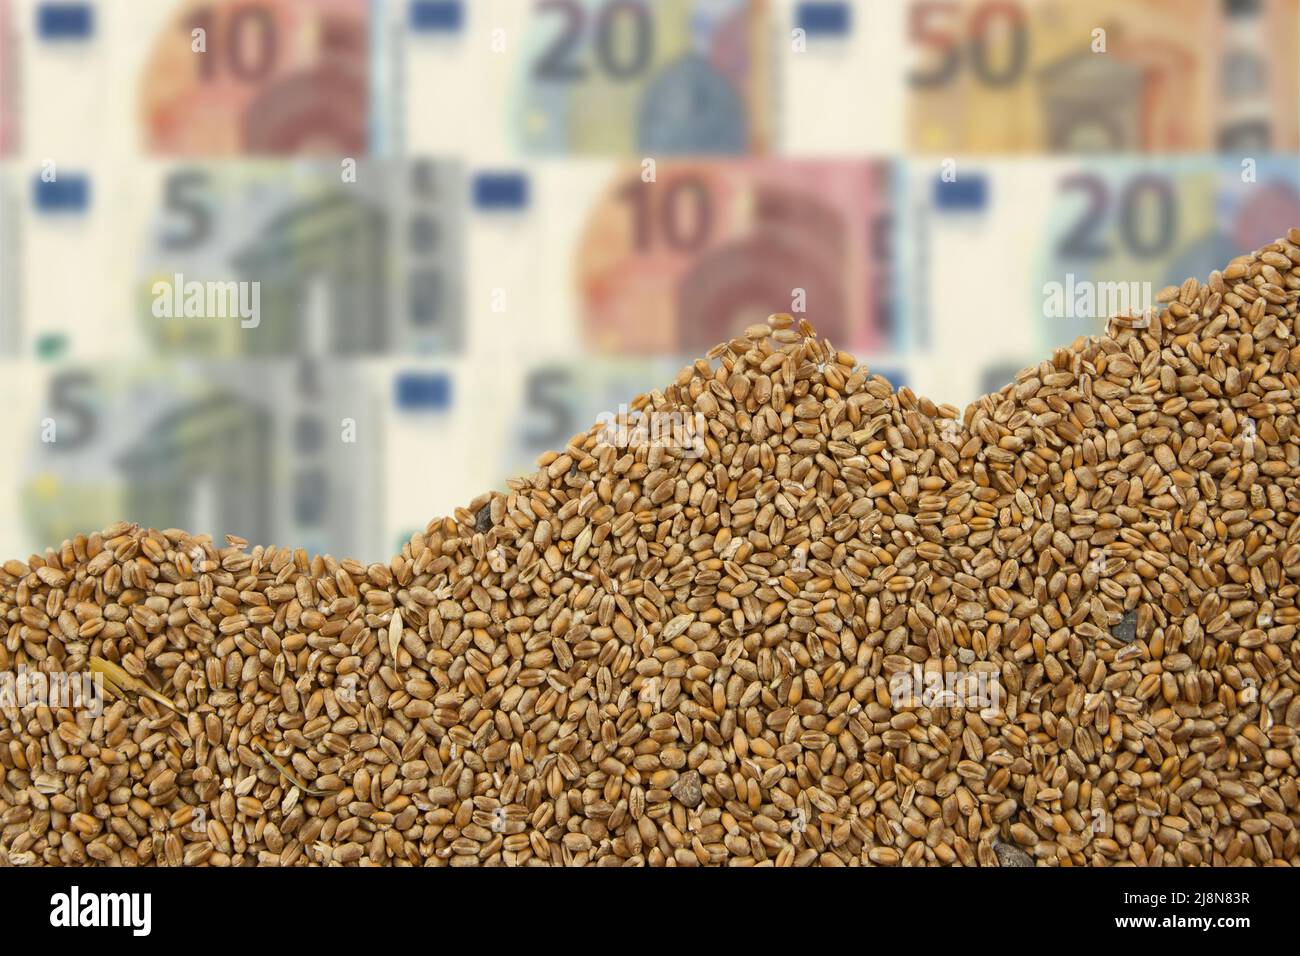 Tableau des céréales et factures d'euro.le changement climatique chauffe les prix des céréales. Banque D'Images